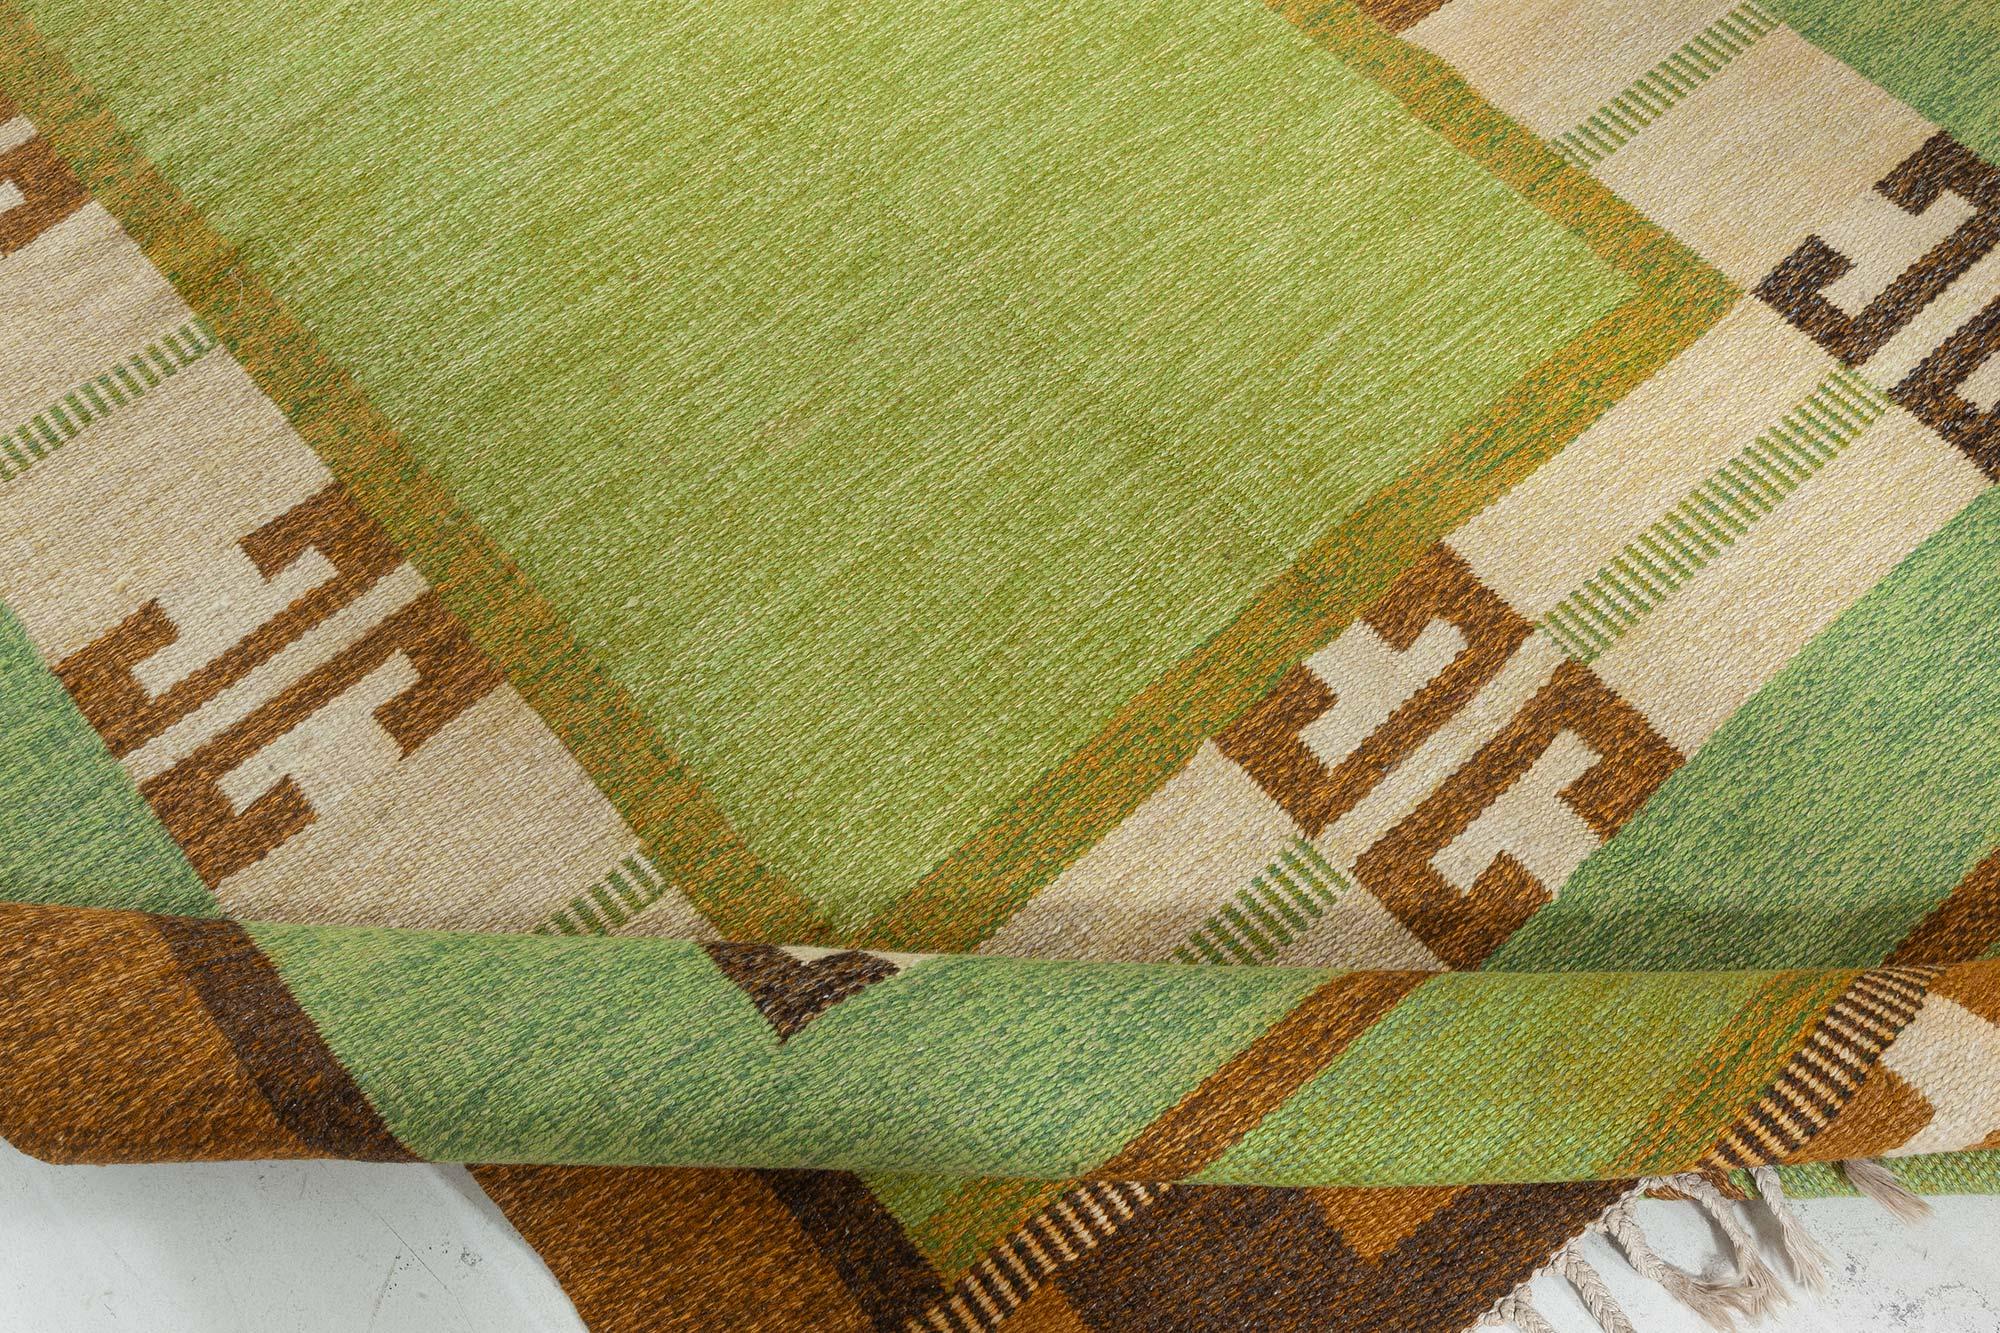 Wool Vintage Green Flat-weave Rug by Ingegerd Silow For Sale